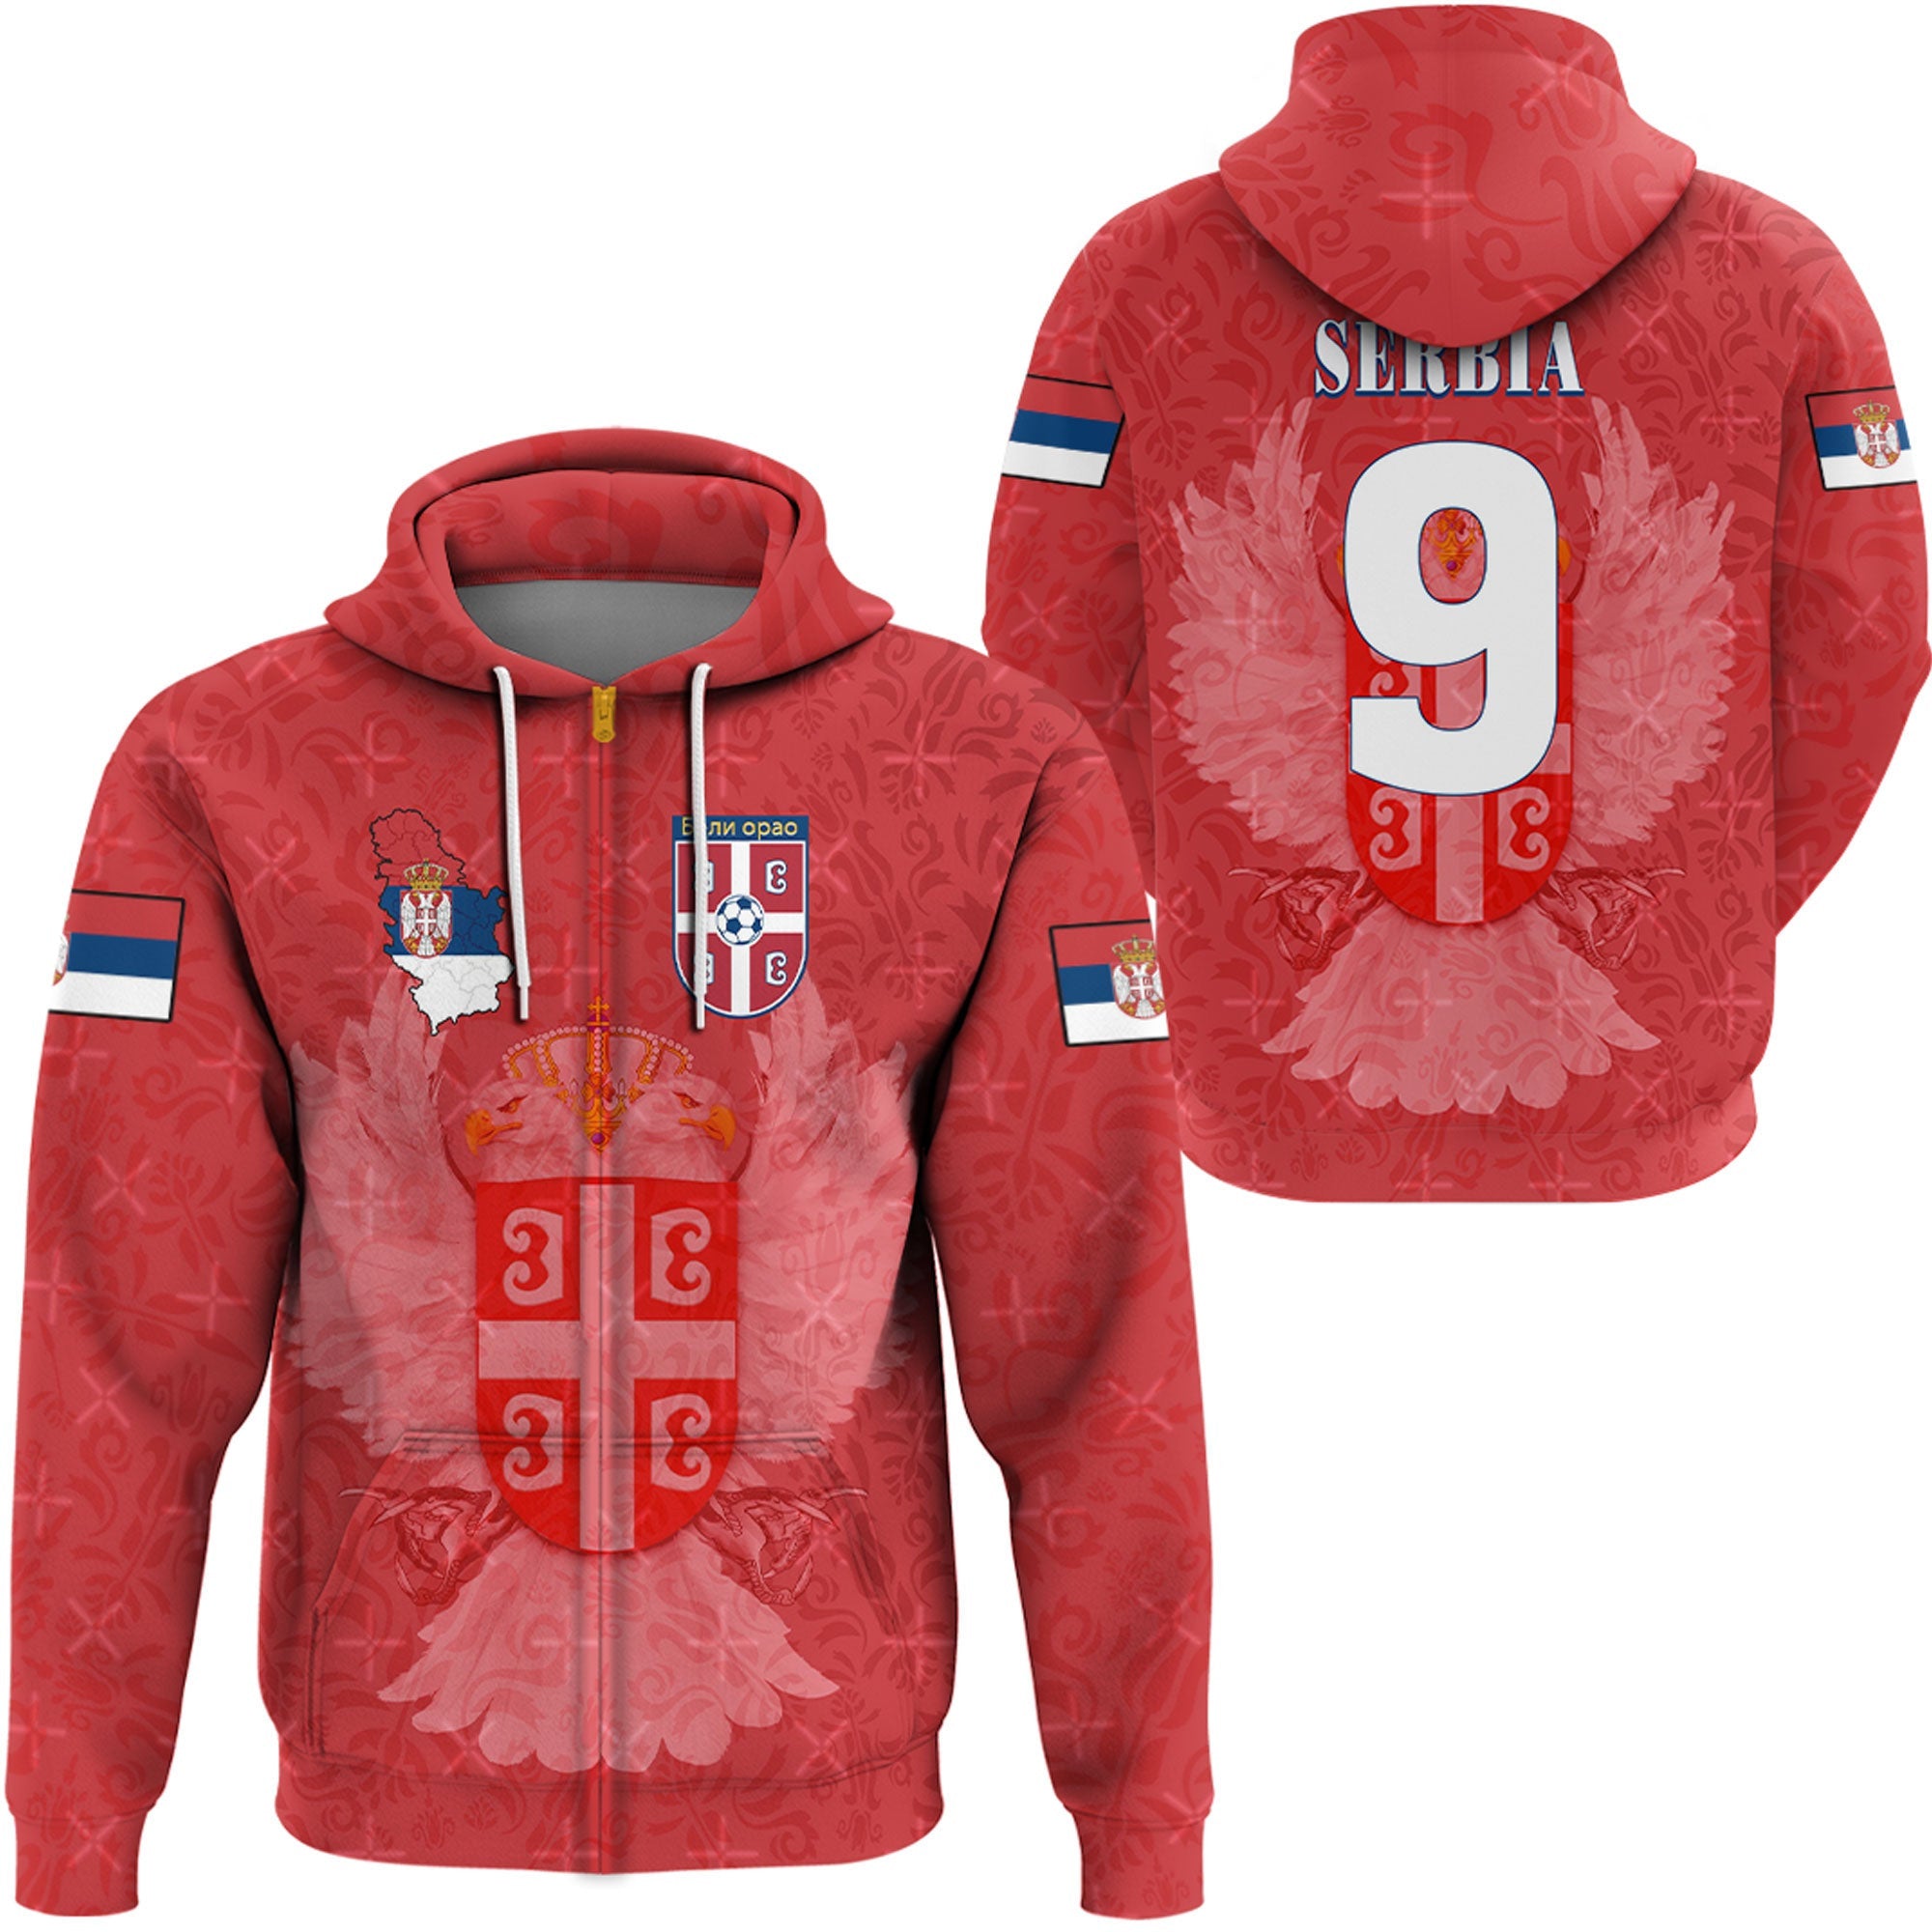 serbia-soccer-style-zip-hoodie